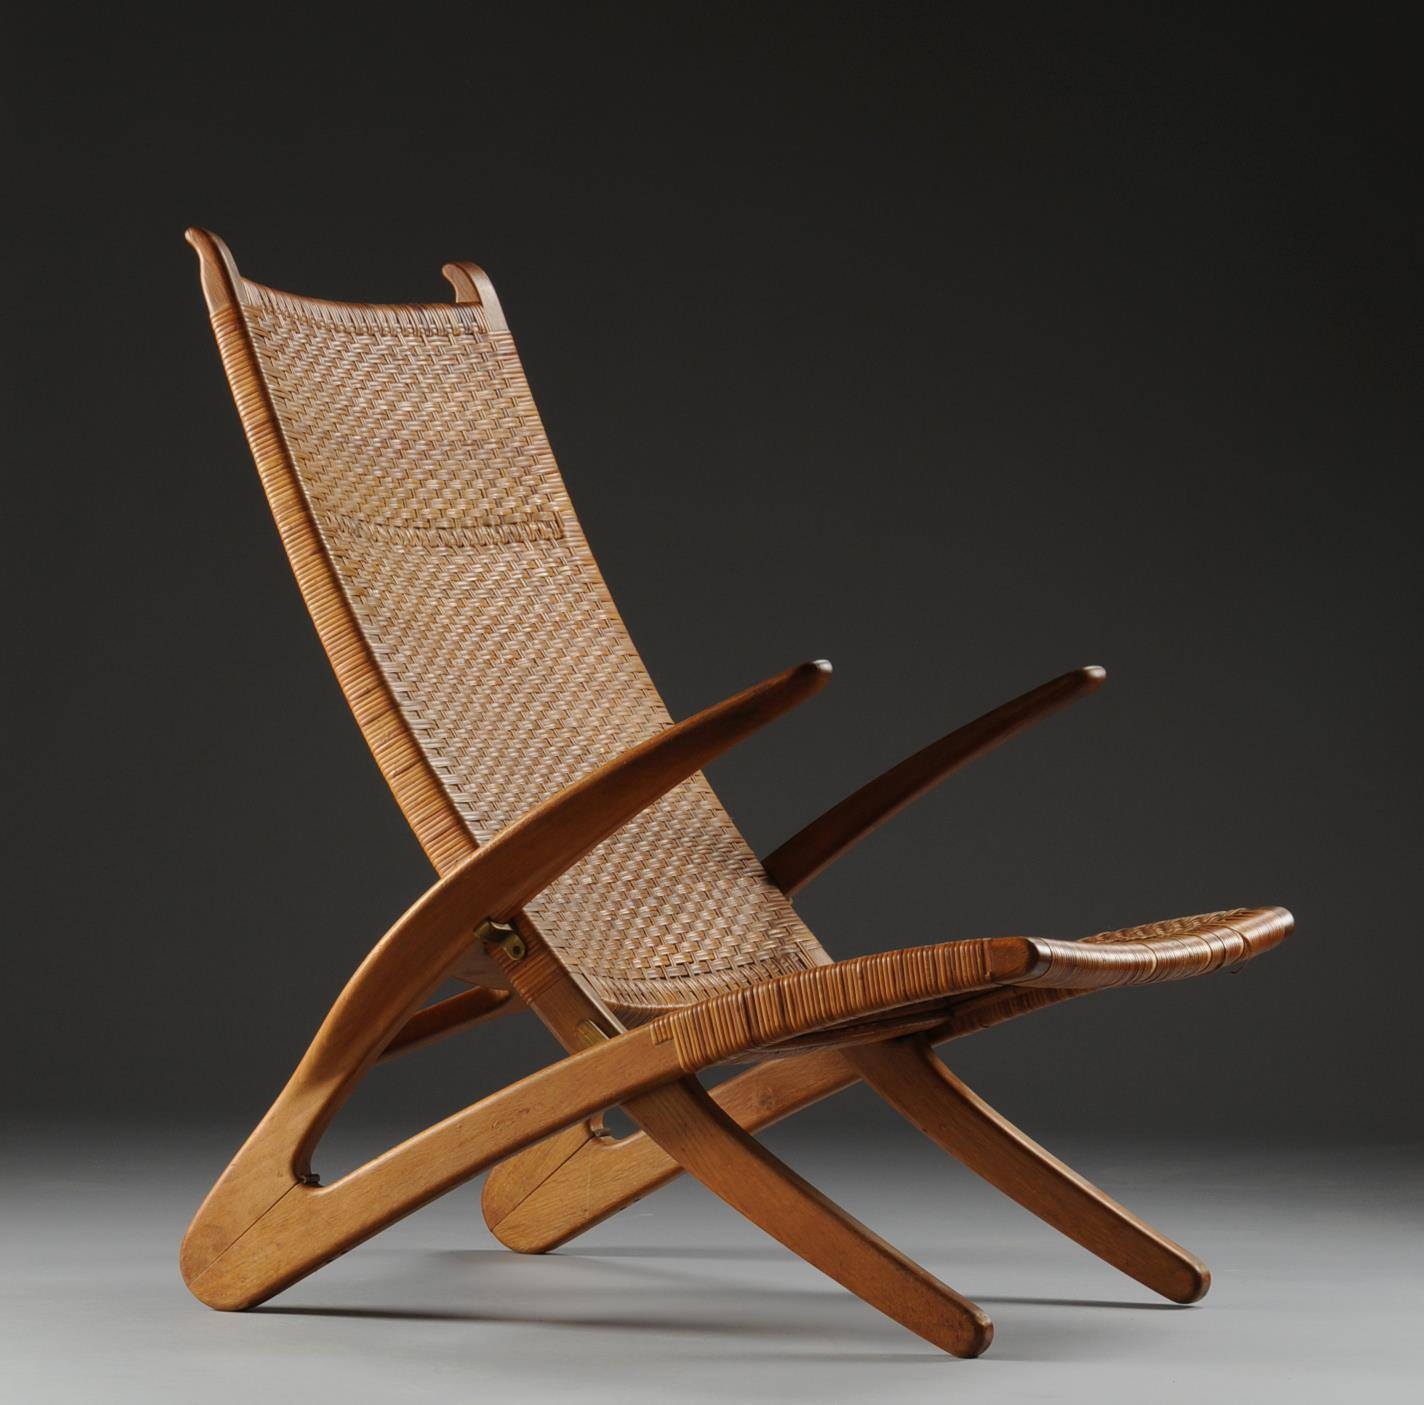 Wicker folding chairs